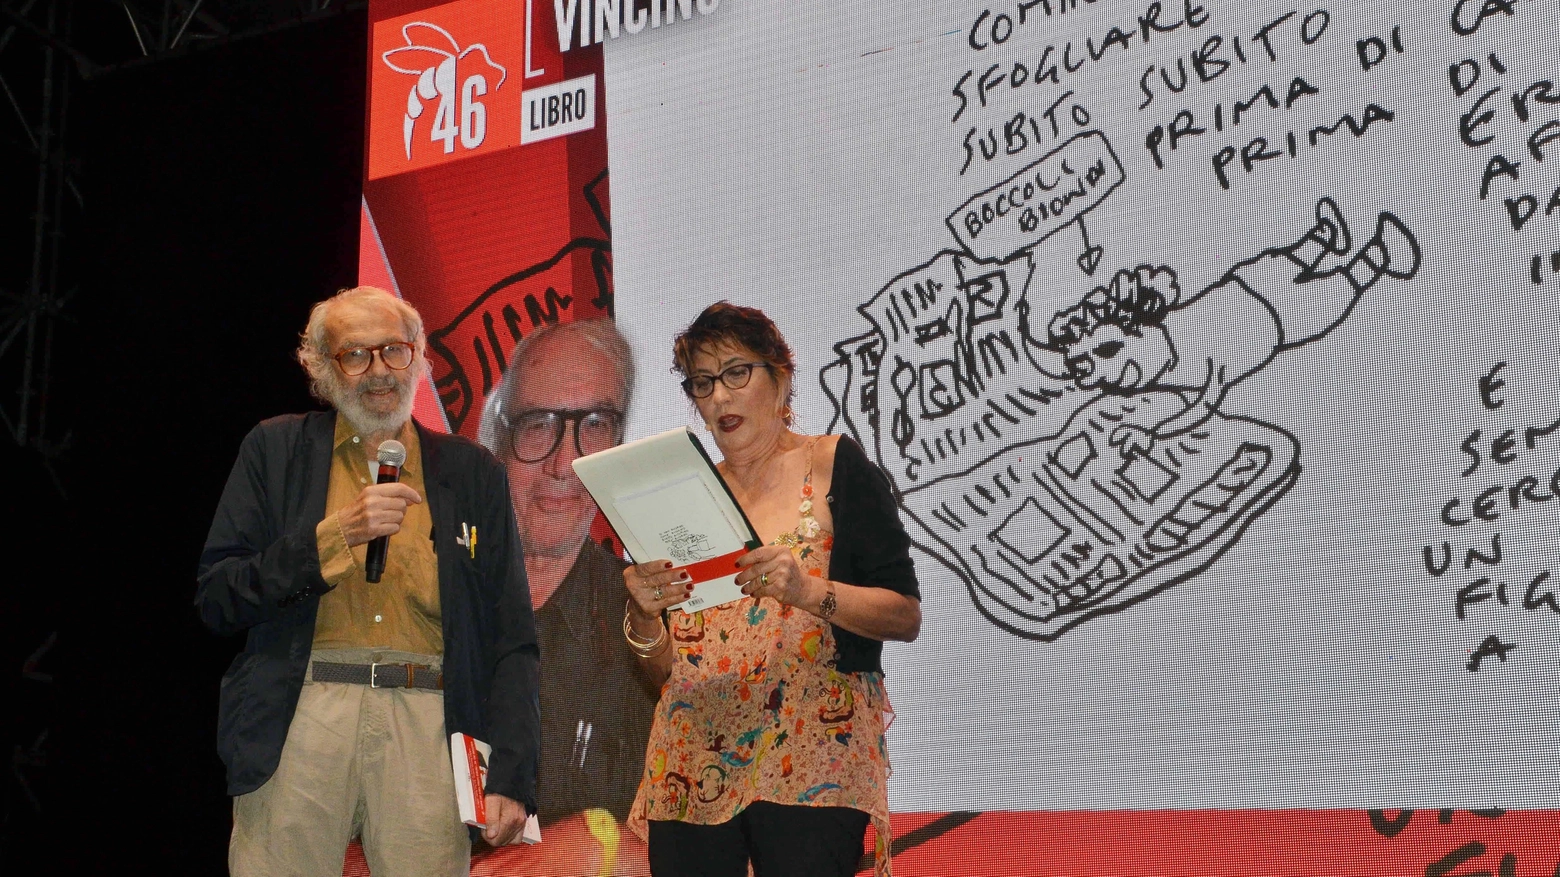 Vincino con Serena Dandini al Premio Satira 2018 (Umicini) 